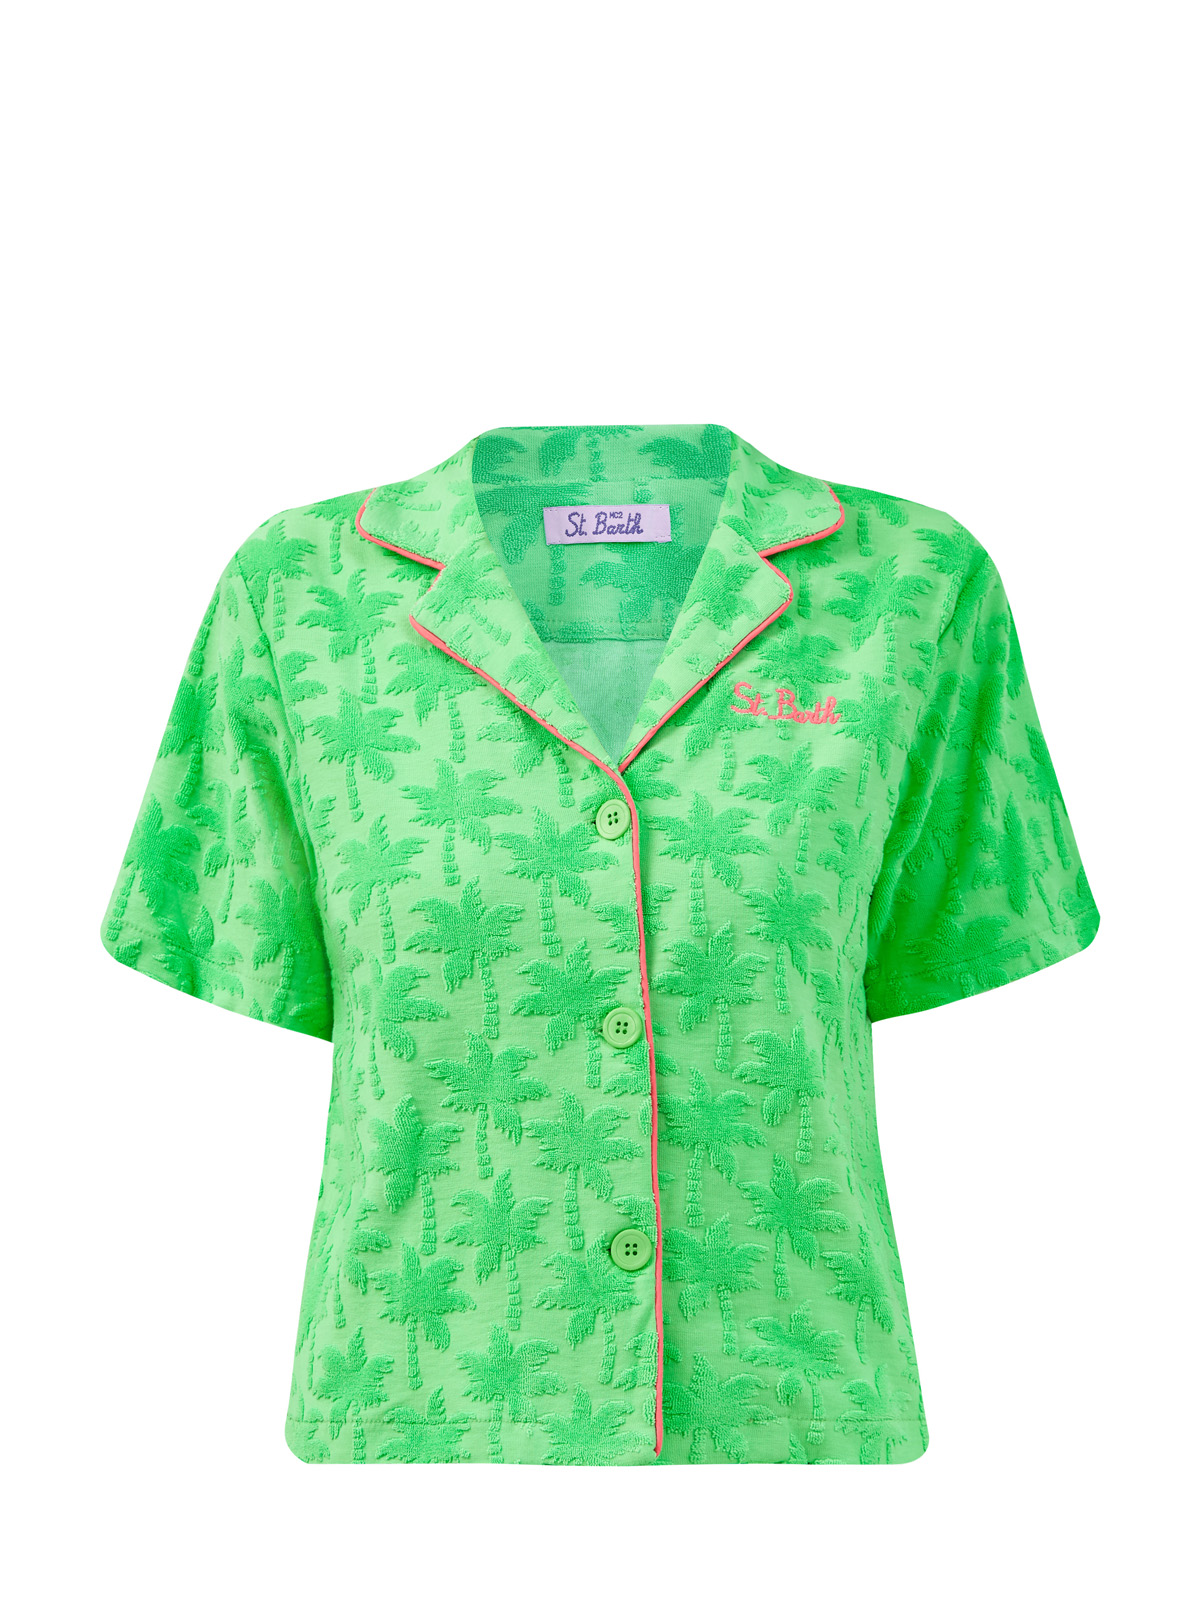 Рубашка с фактурным узором и контрастной окантовкой MC2 SAINT BARTH, цвет зеленый, размер 38;40;44